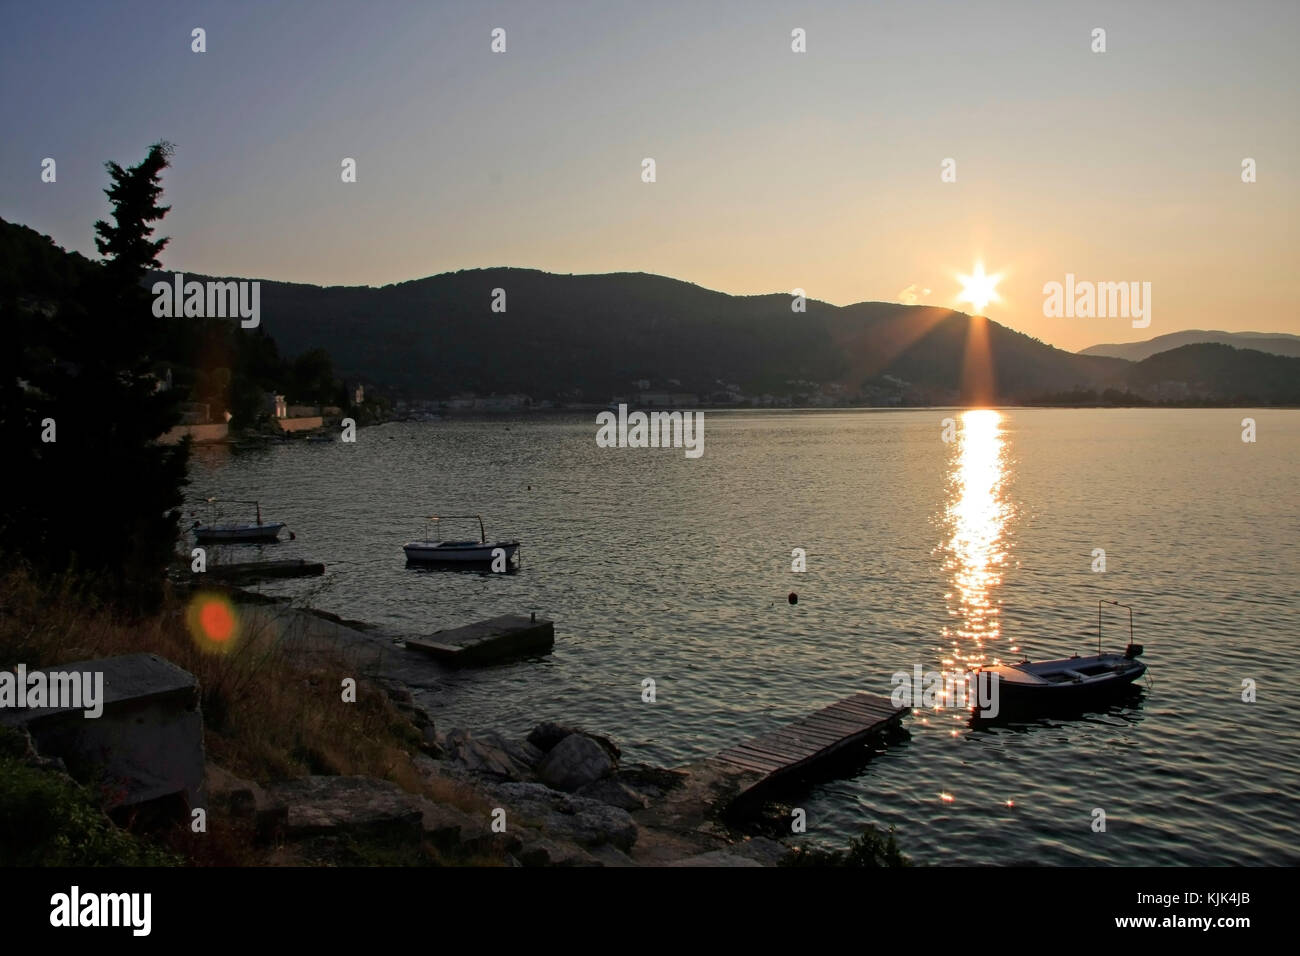 Sonnenuntergang in der Bucht von Saint George der Stadt Vis, eine Stadt auf der gleichnamigen Insel in der Adria im Süden Kroatiens. Stockfoto